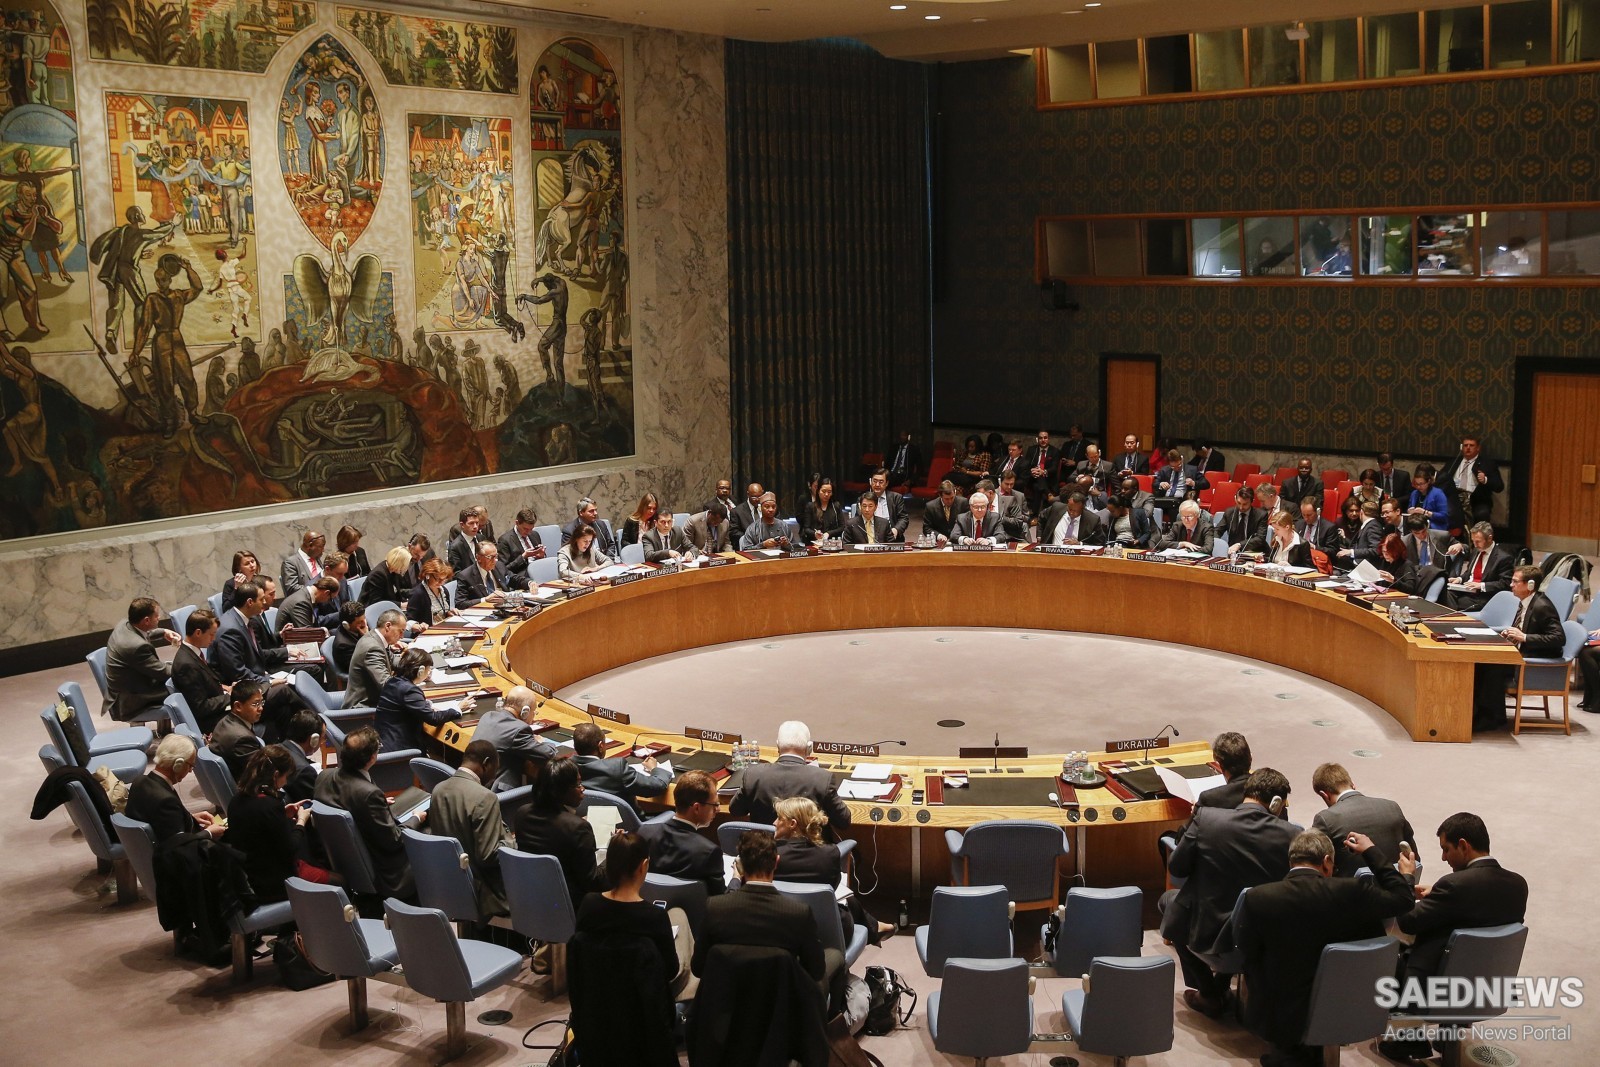 संयुक्त राष्ट्र सुरक्षा परिषद म्यांमार के तख्तापलट की निंदा में संयुक्त वक्तव्य के रूप में कोई संयुक्त स्थिति तक नहीं पहुंचती